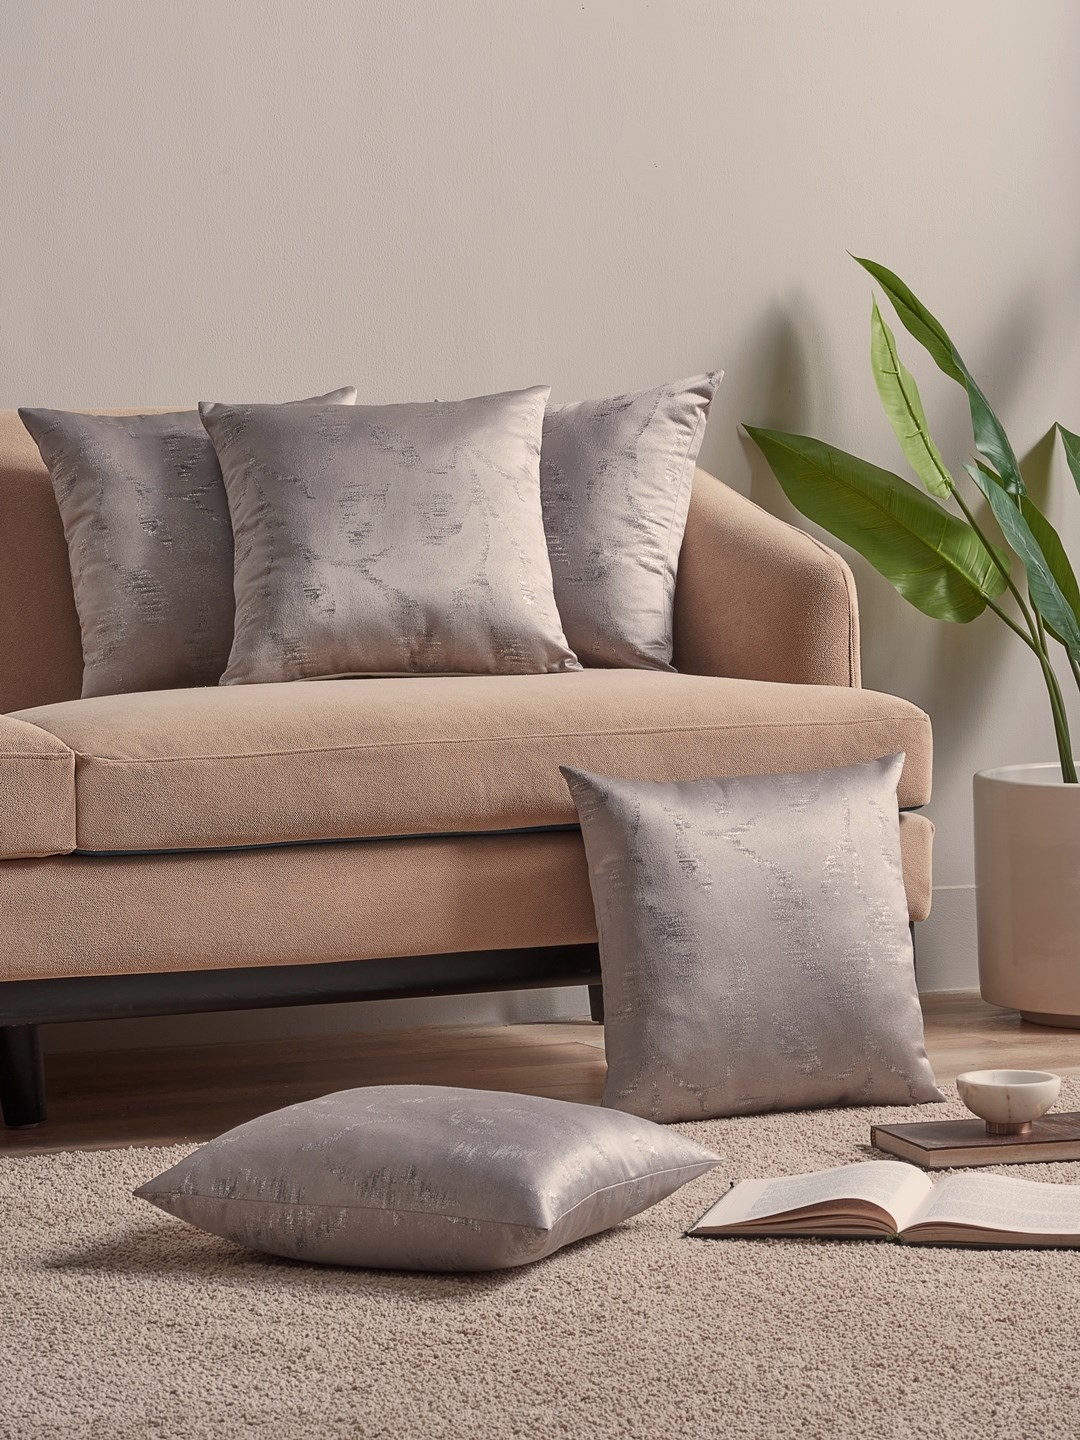 Cushion Online Sofa Cushions D